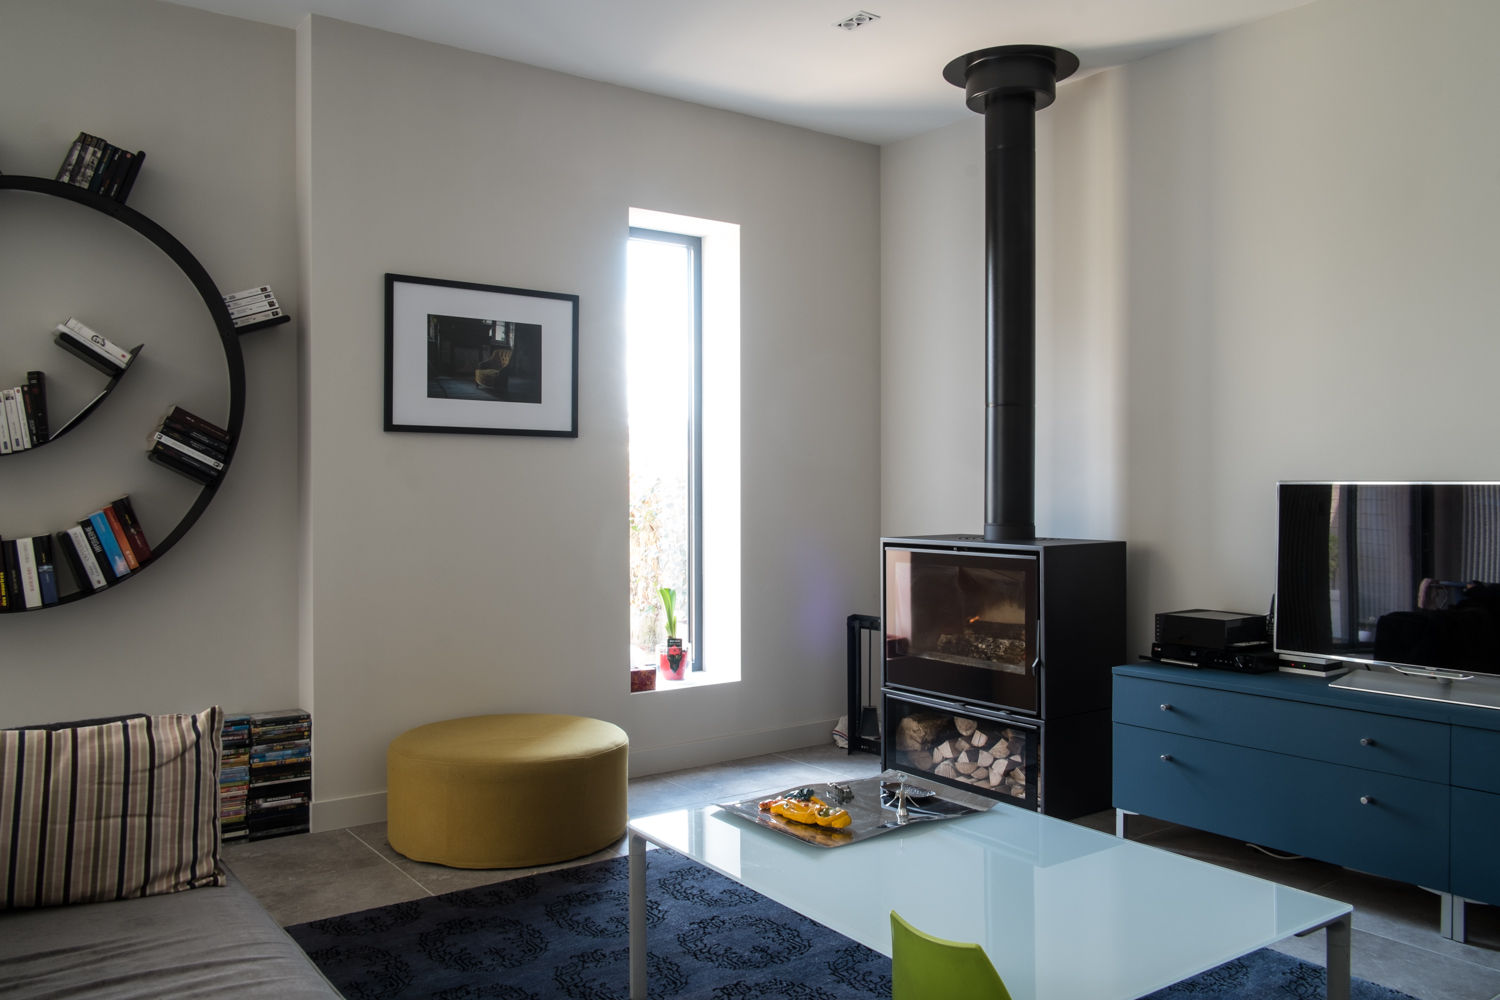 Maison à Limoges 2016, Jean-Paul Magy architecte d'intérieur Jean-Paul Magy architecte d'intérieur Modern living room